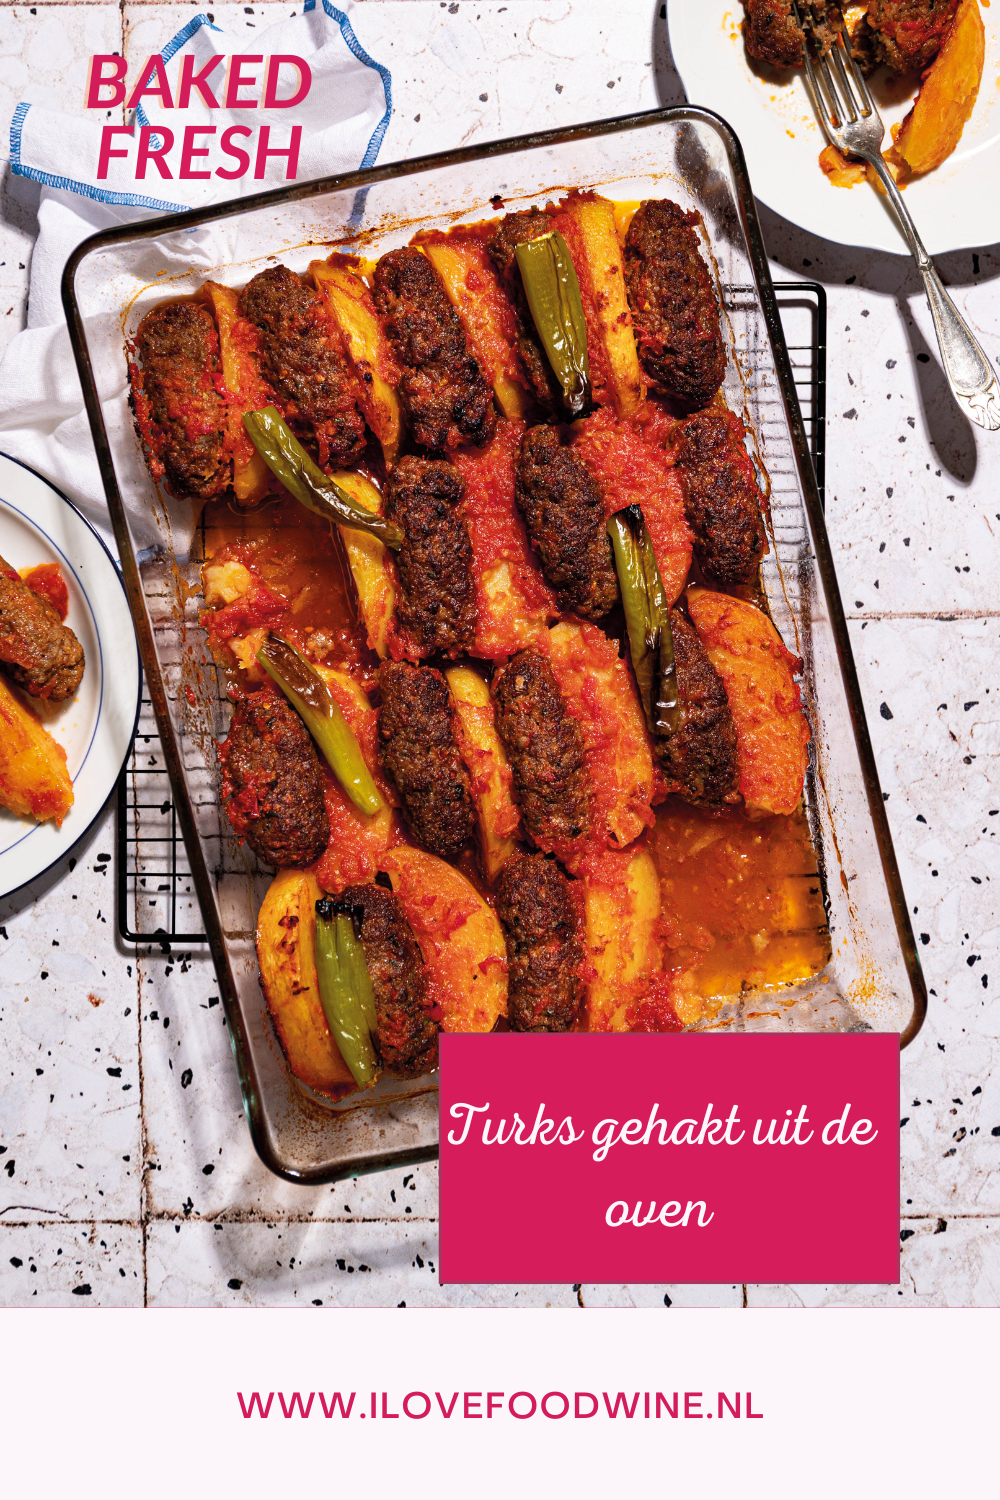 Köfte, oftewel Turkse gehaktballetjes in tomatensaus. Recept uit de oven uit kookboek Bijbel van de Turkse keuken van Hale Amus. #ovenschotel #gehakt